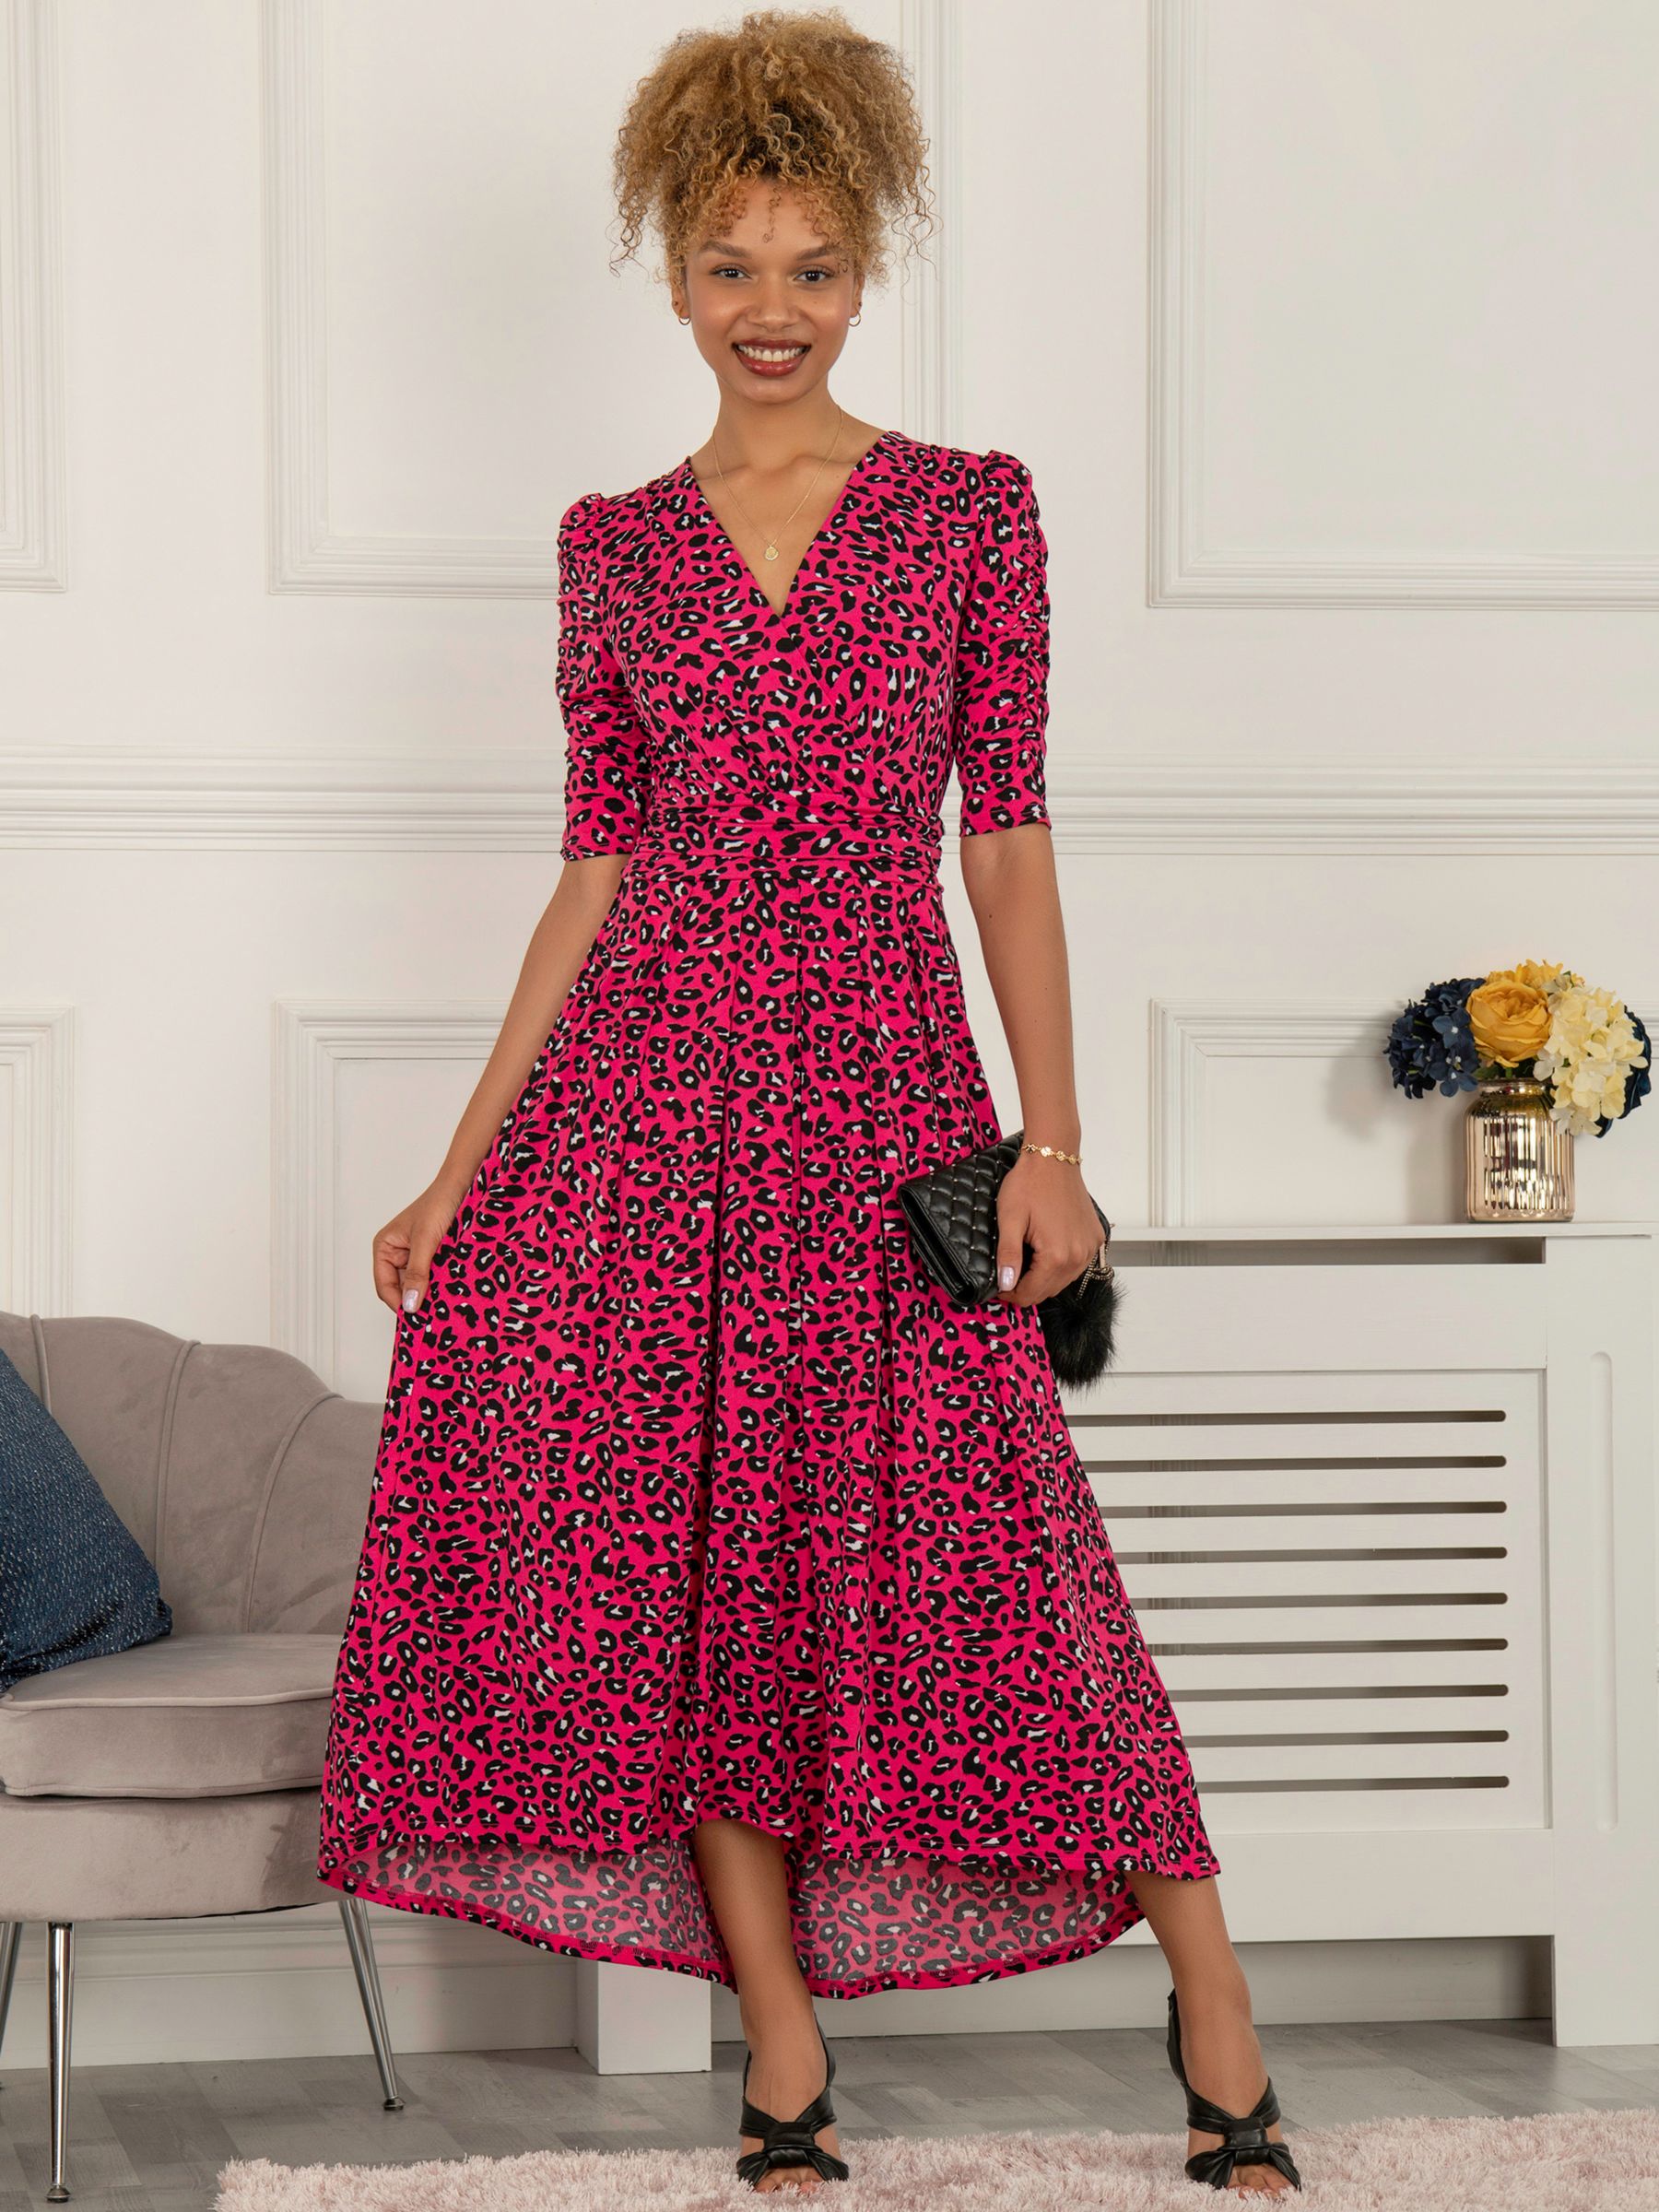 Jolie Moi Maanasi Animal Print Dress, Pink at John Lewis & Partners